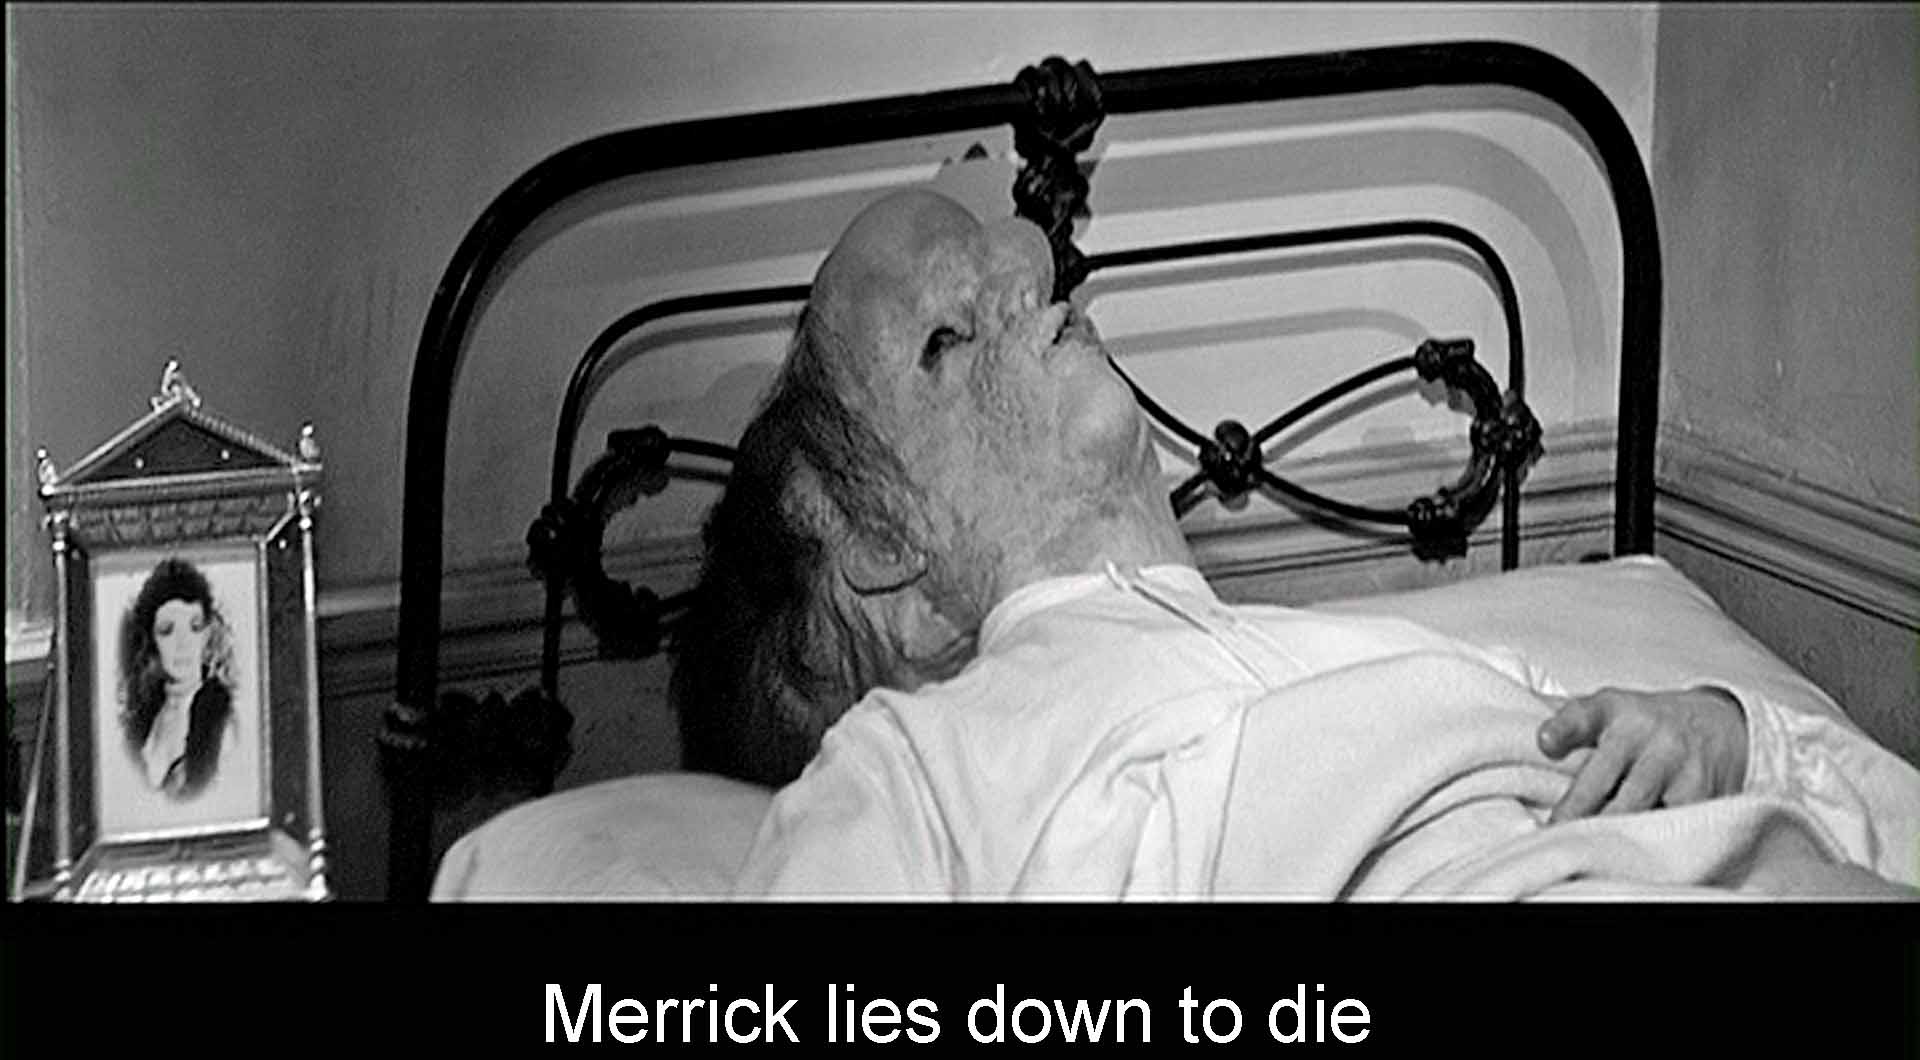 Merrick lies down to die